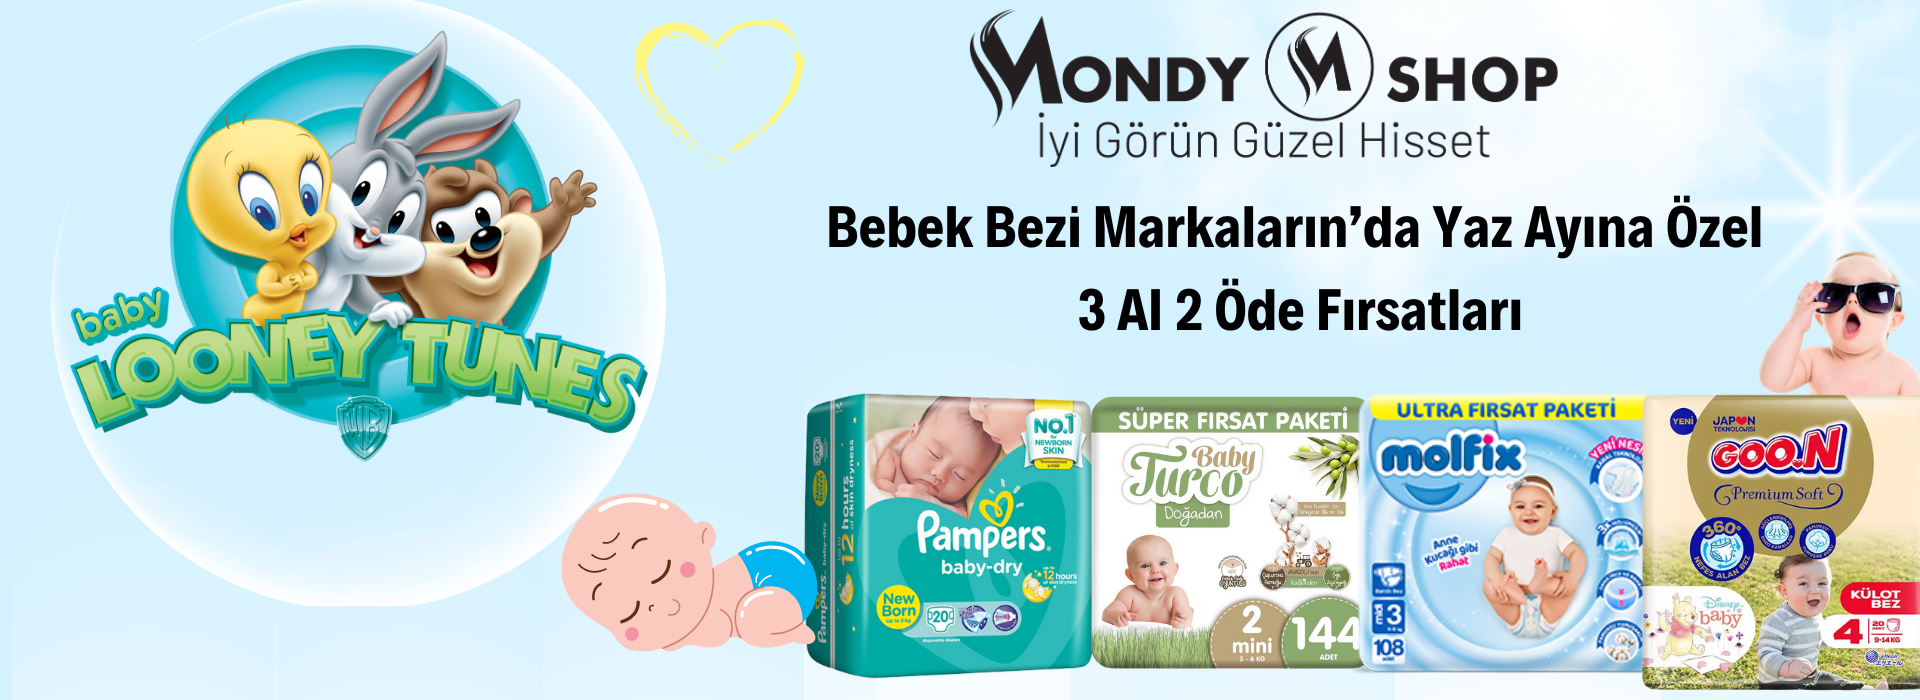 Bebek Bezi Fiyatları Mondy Shop